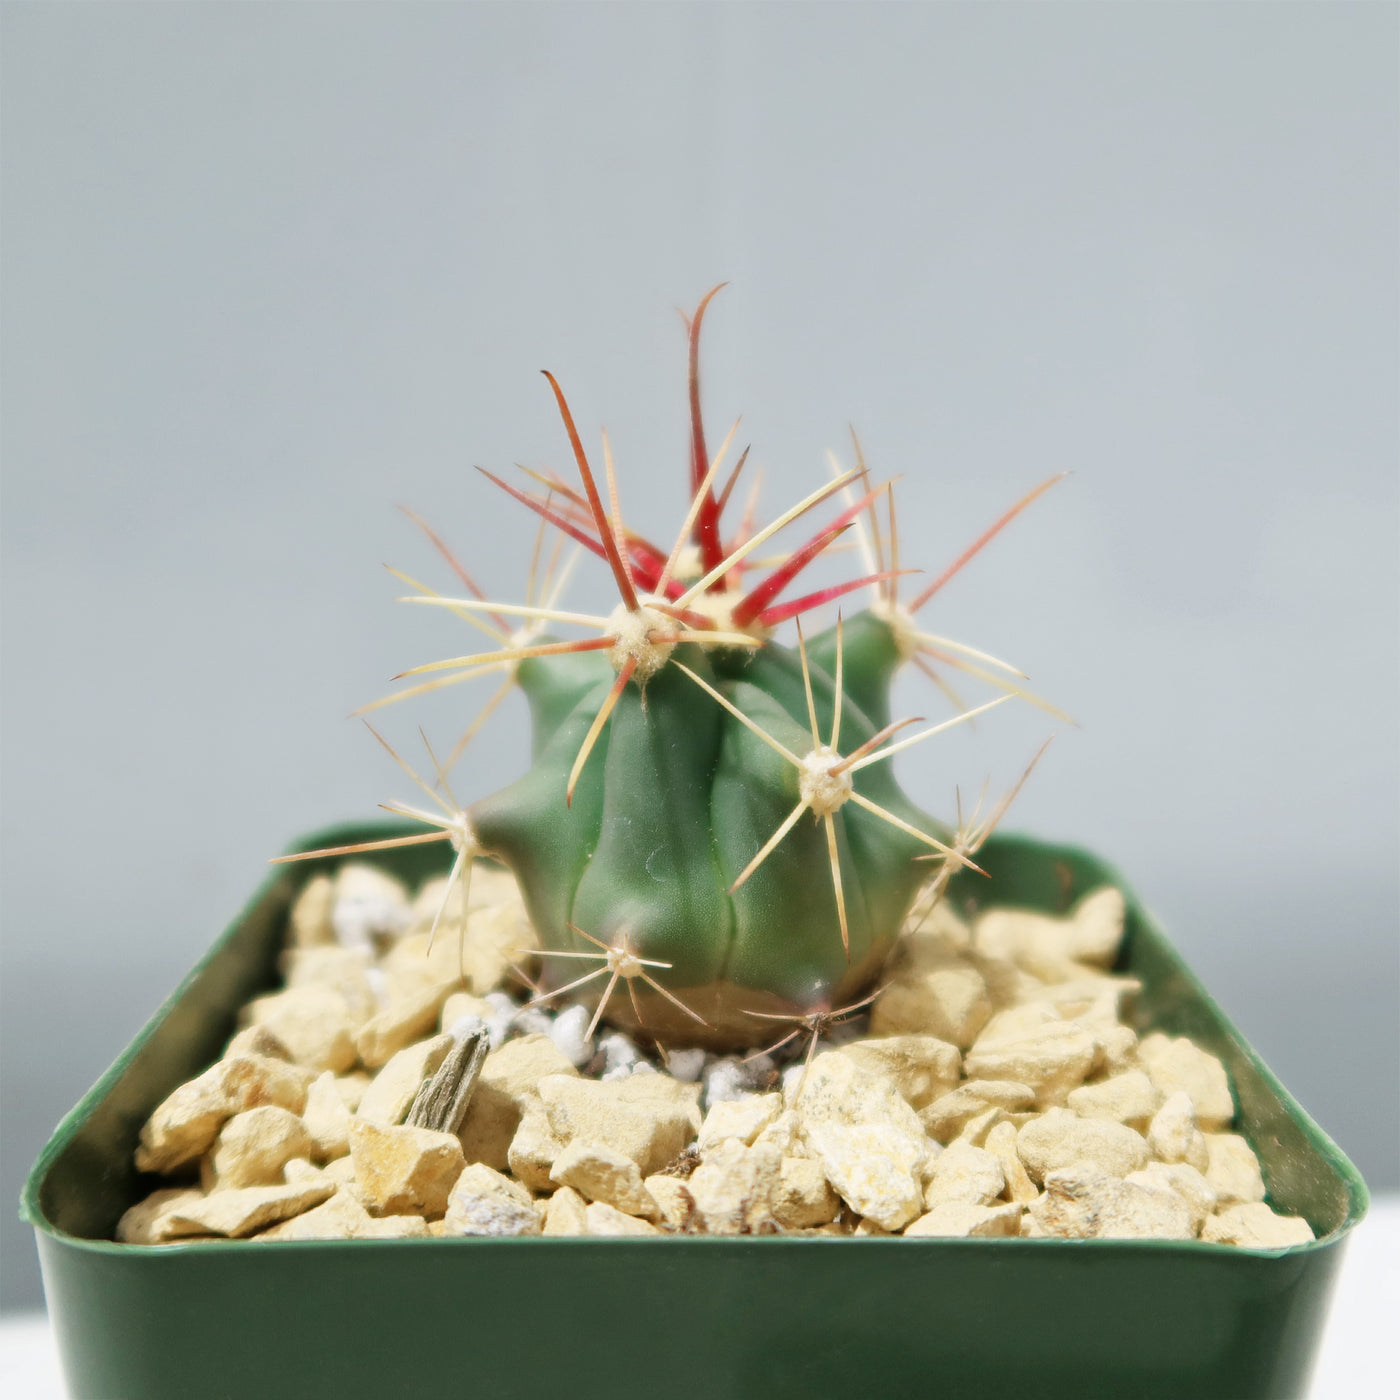 Fishhook Barrel Cactus ‘Ferocactus wislizeni’